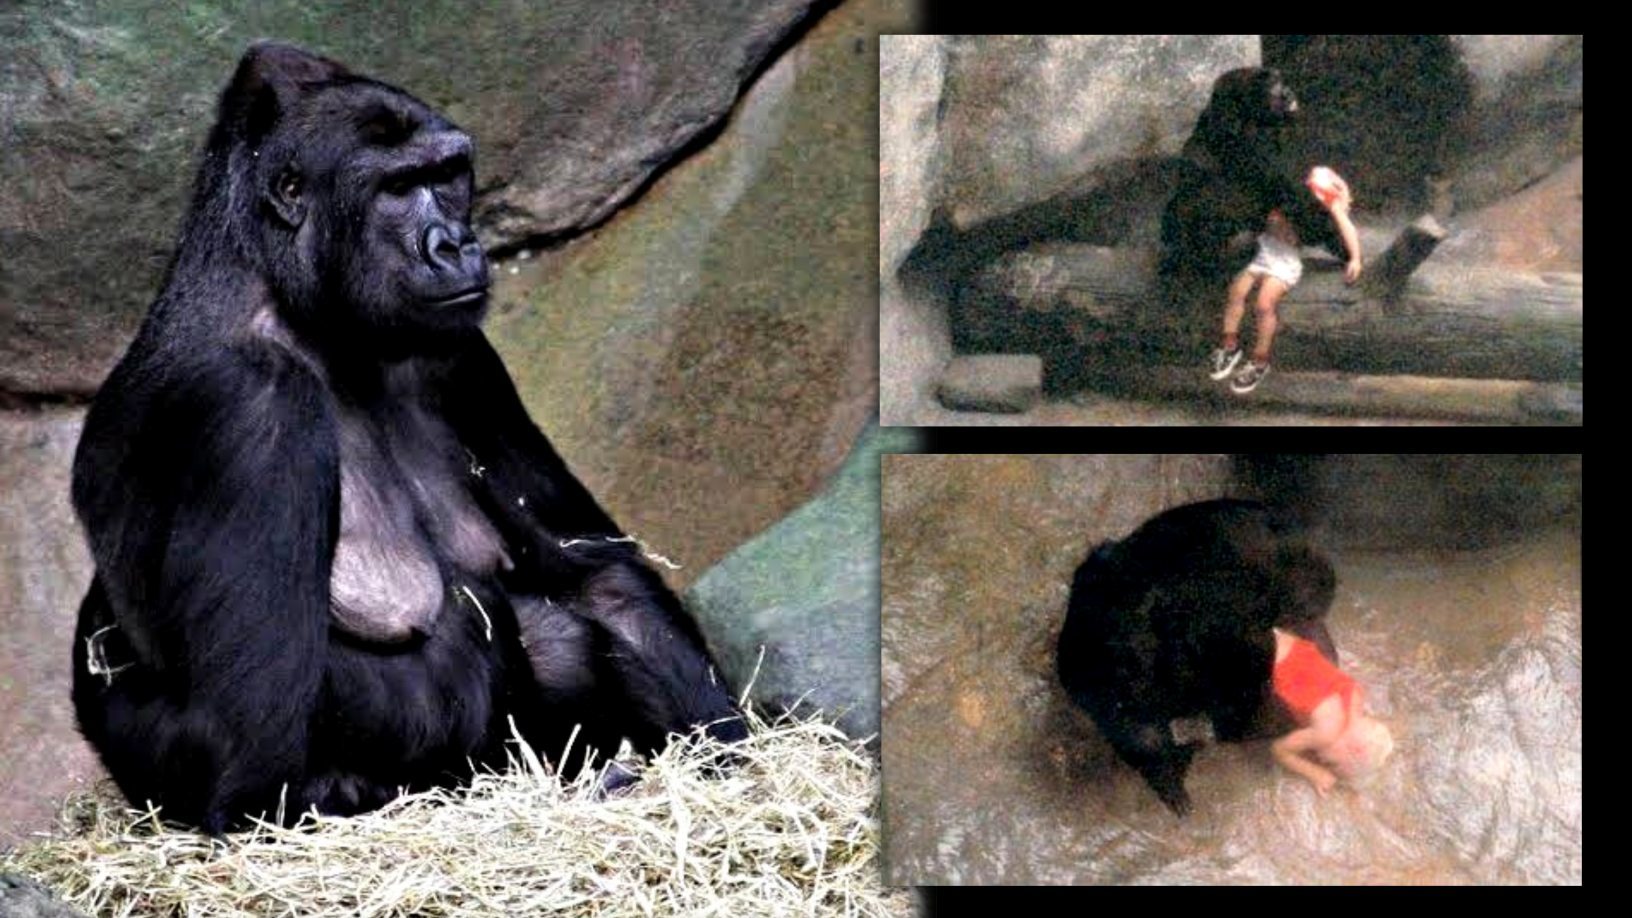 Binti Jua: Tato gorila samice zachránila dítě, které spadlo do jejího výběhu pro zoo 2